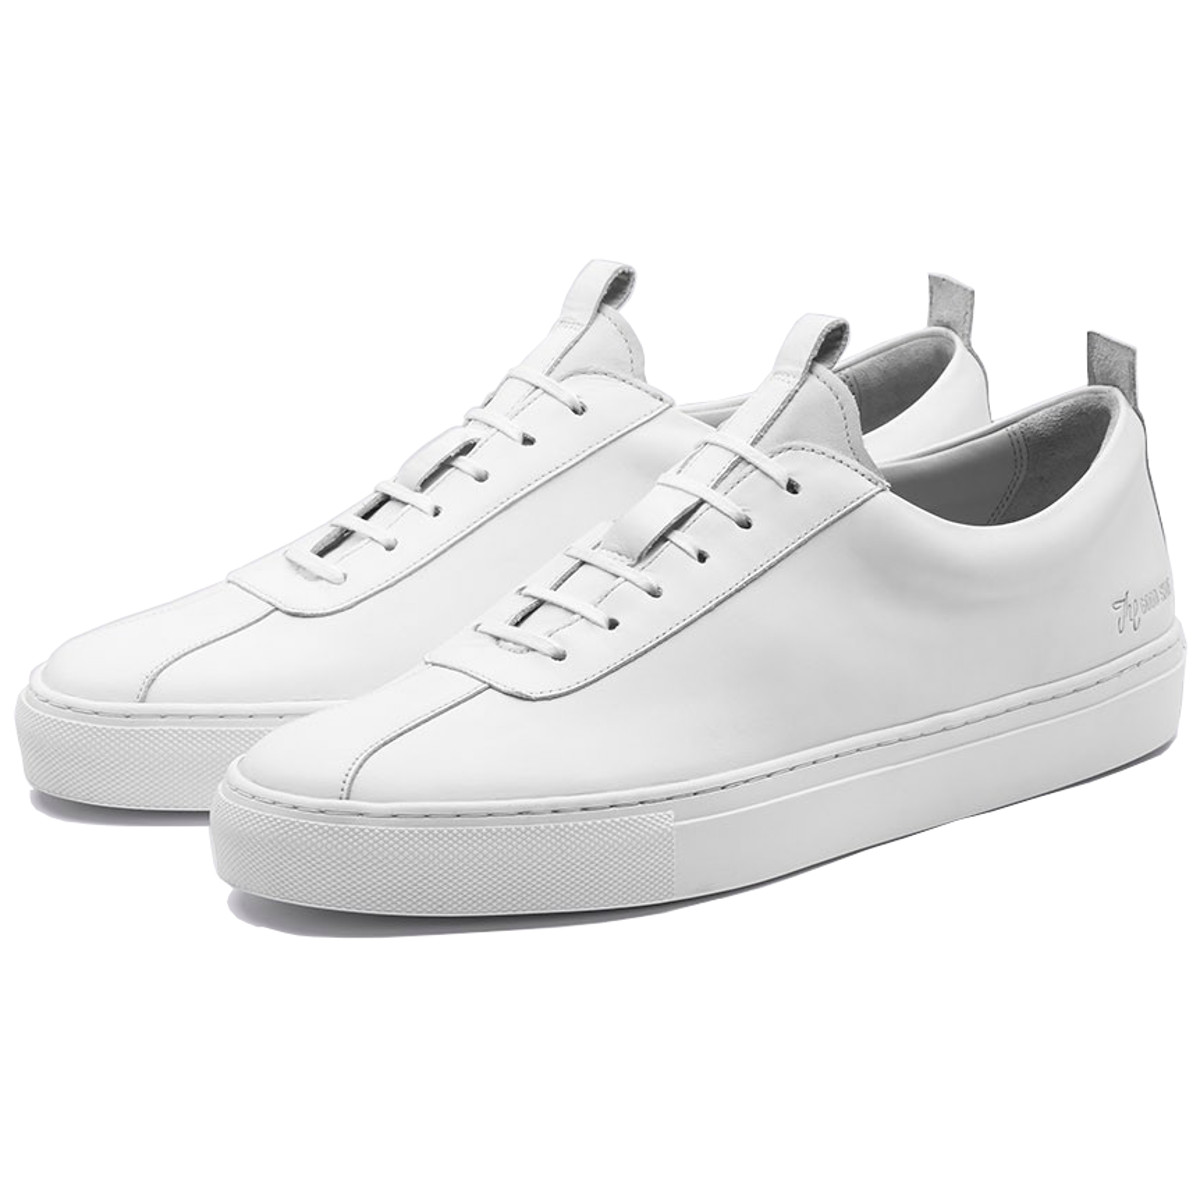 Grenson Sneaker 1 White - Pediwear Footwear